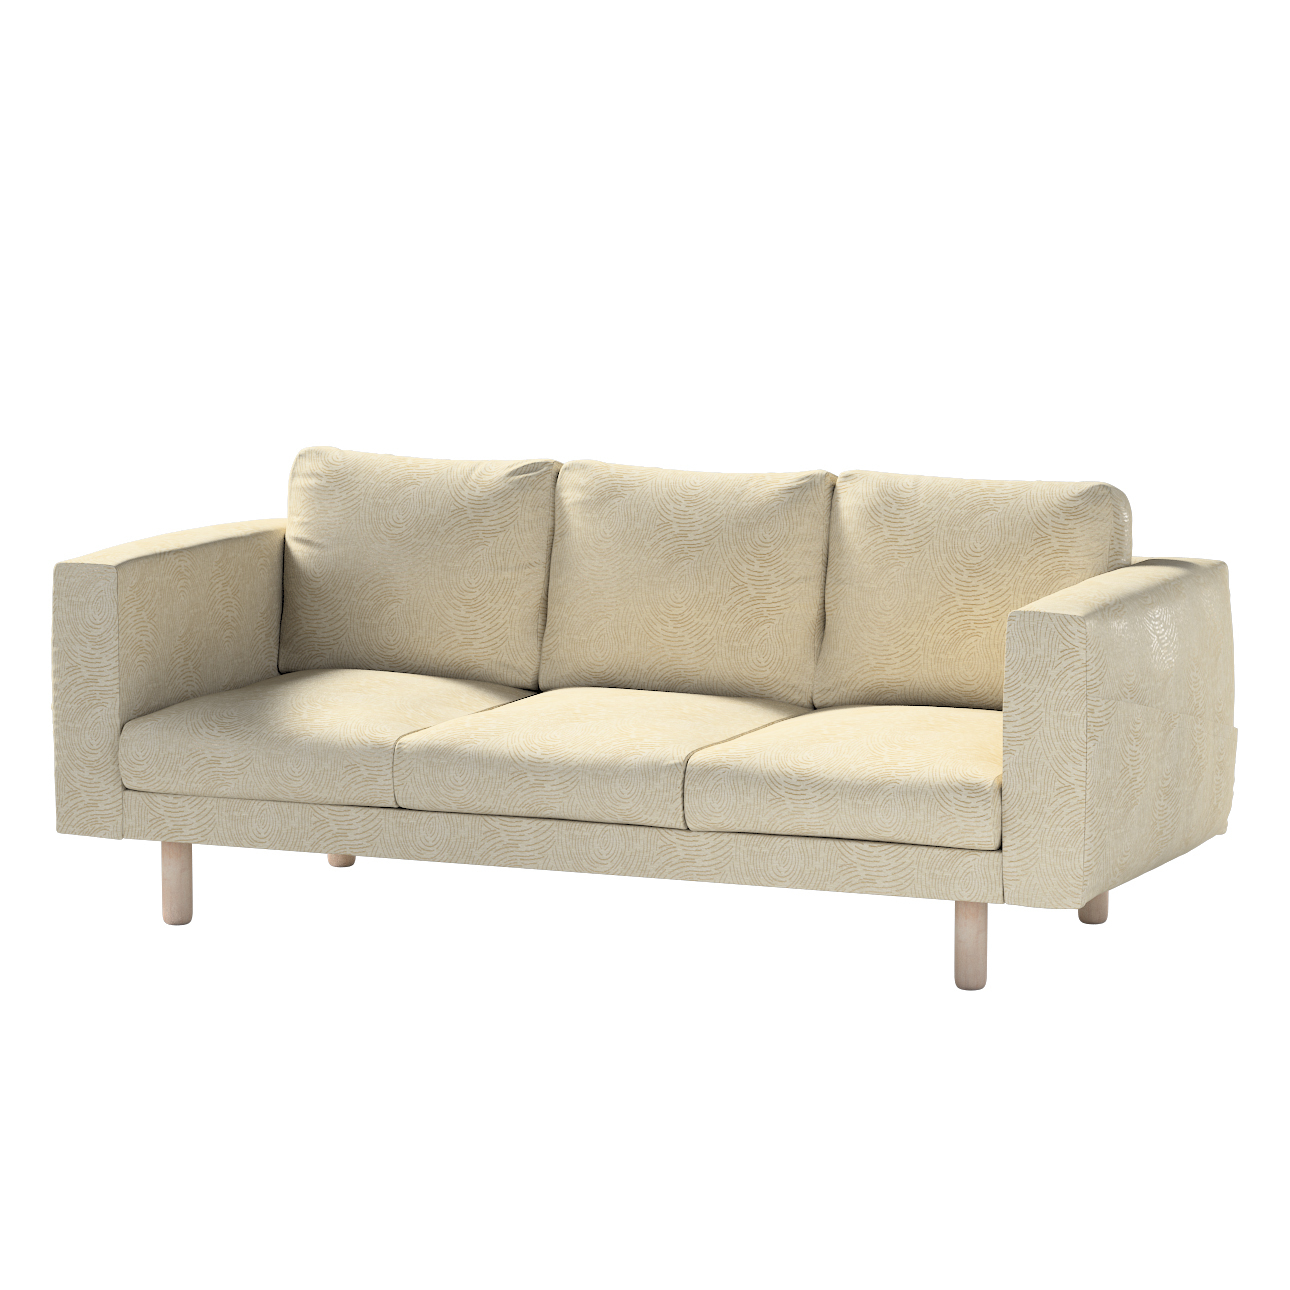 Bezug für Norsborg 3-Sitzer Sofa, beige-golden, Norsborg 3-Sitzer Sofabezug günstig online kaufen